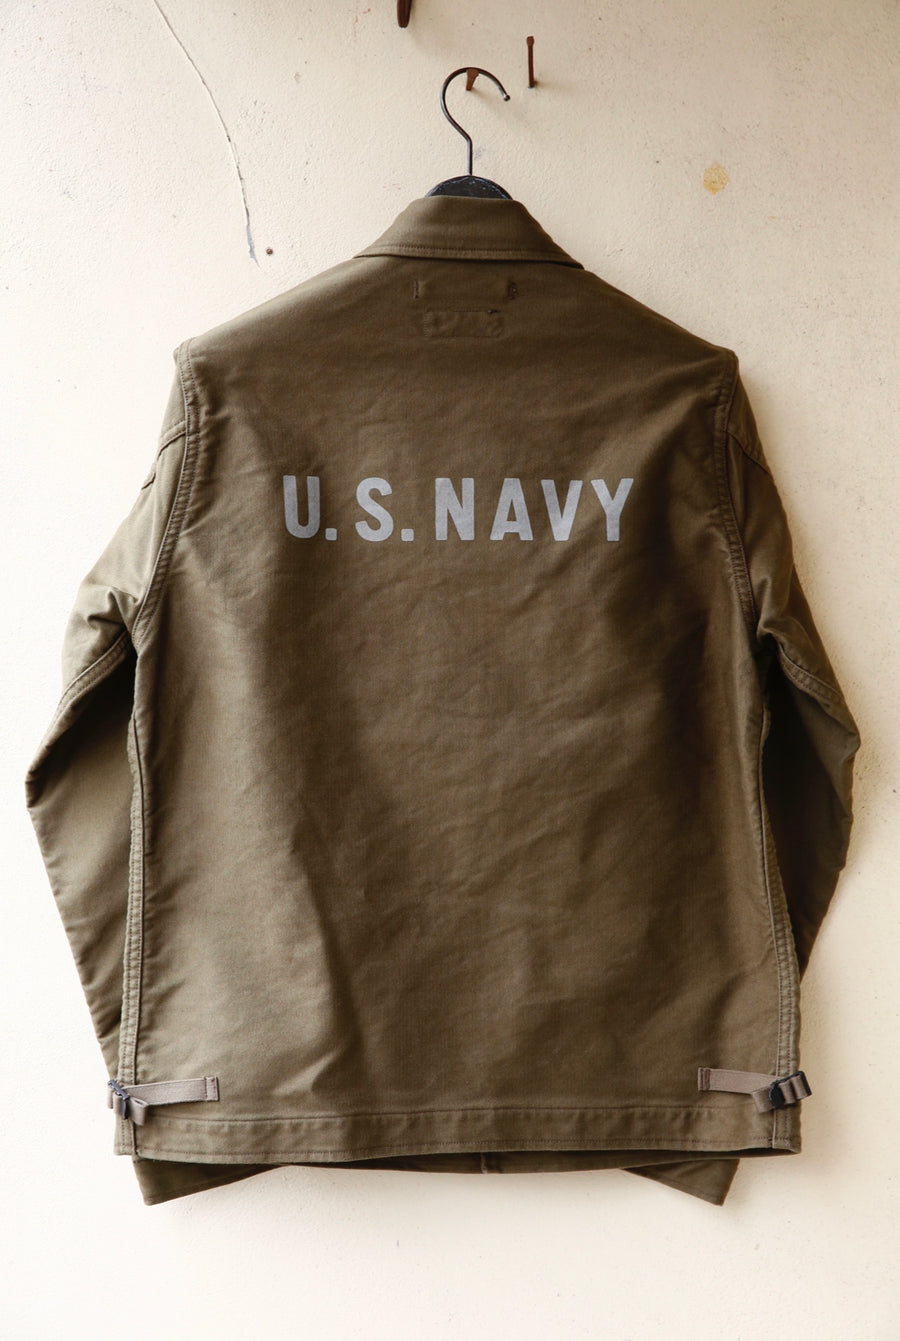 Freewheelers "U.S.N. Stencil" Deck Worker Jacket